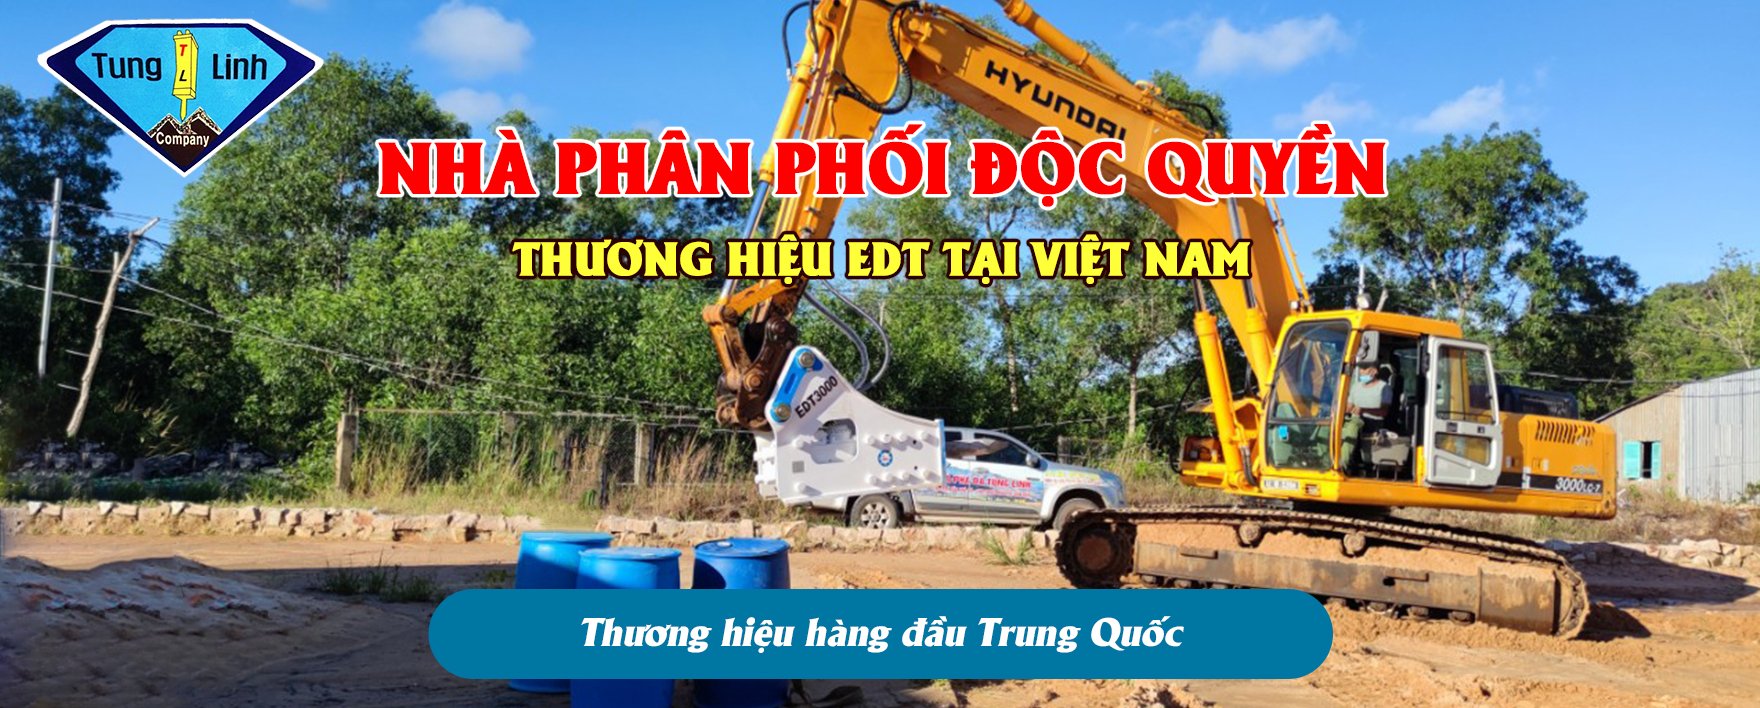 Búa Phá Đá Tùng Linh là nhà phân phối độc quyền thương hiệu EDT tại Việt Nam